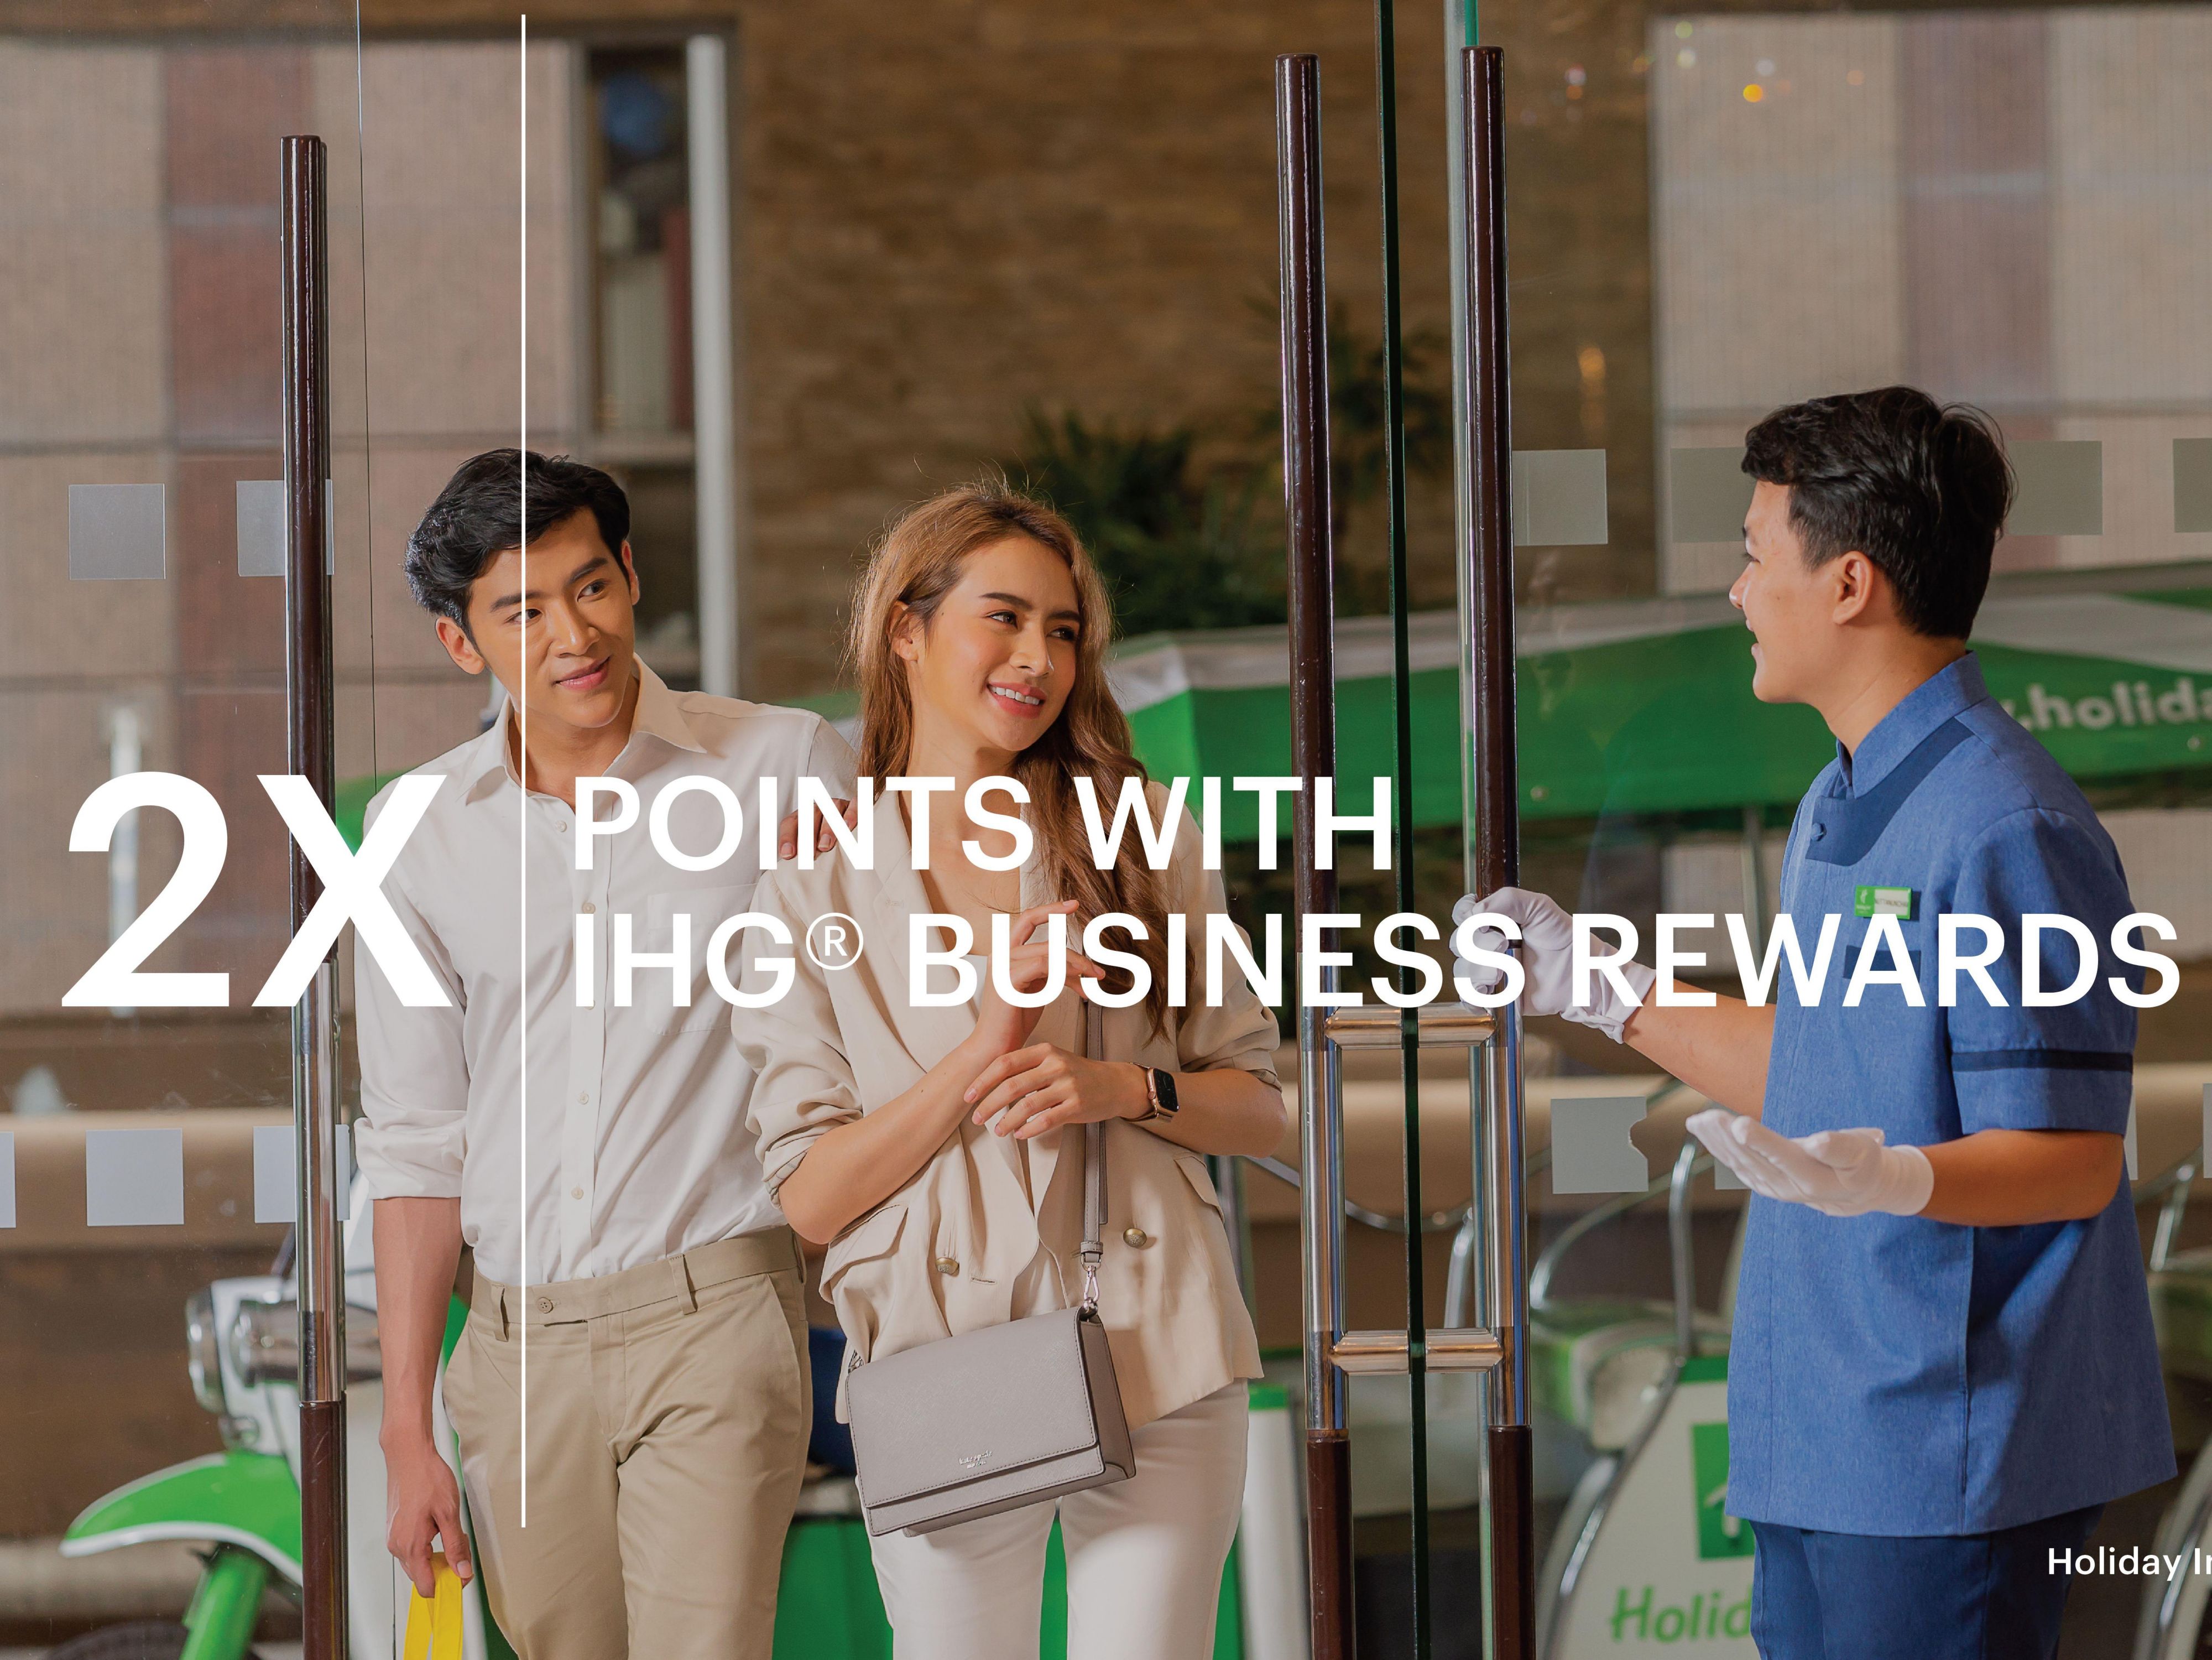 2X points with IHG Business Rewards